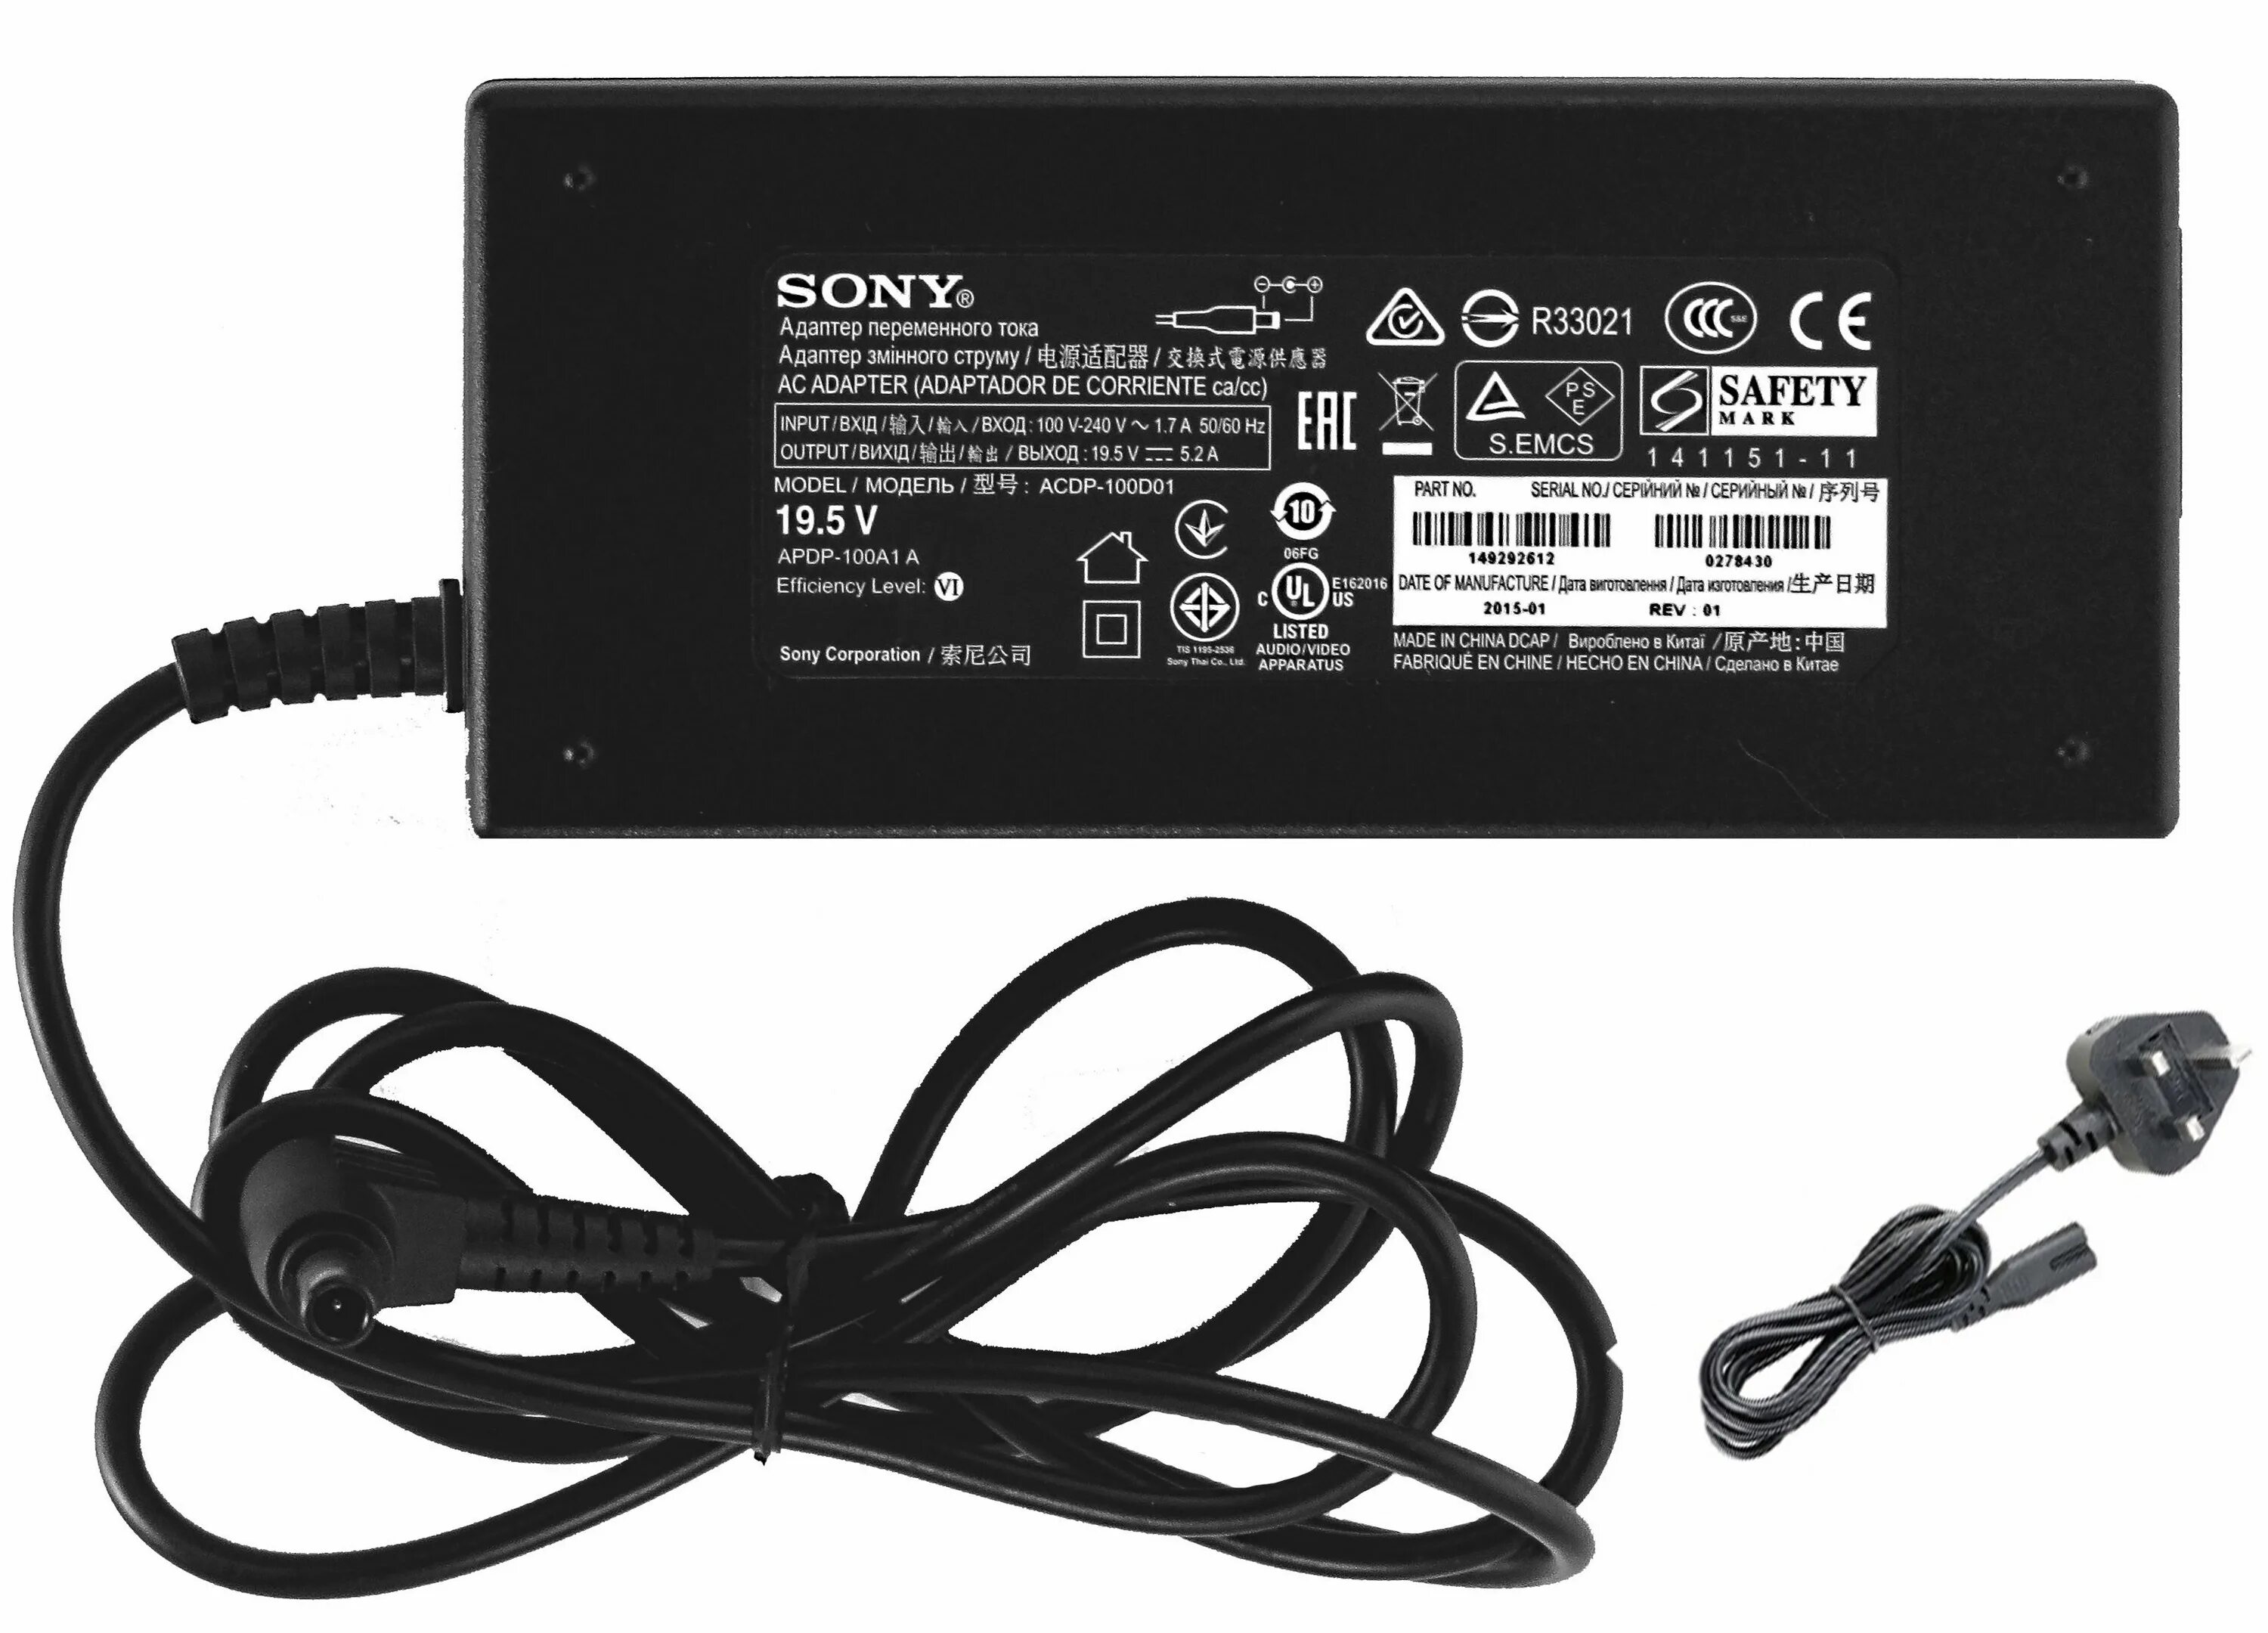 Блок питания для телевизора Sony 19.5v. Адаптер переменного тока для телевизора Sony 19.5v. Блок питания для телевизора сони 19.5 вольт. ACDP-100d01.